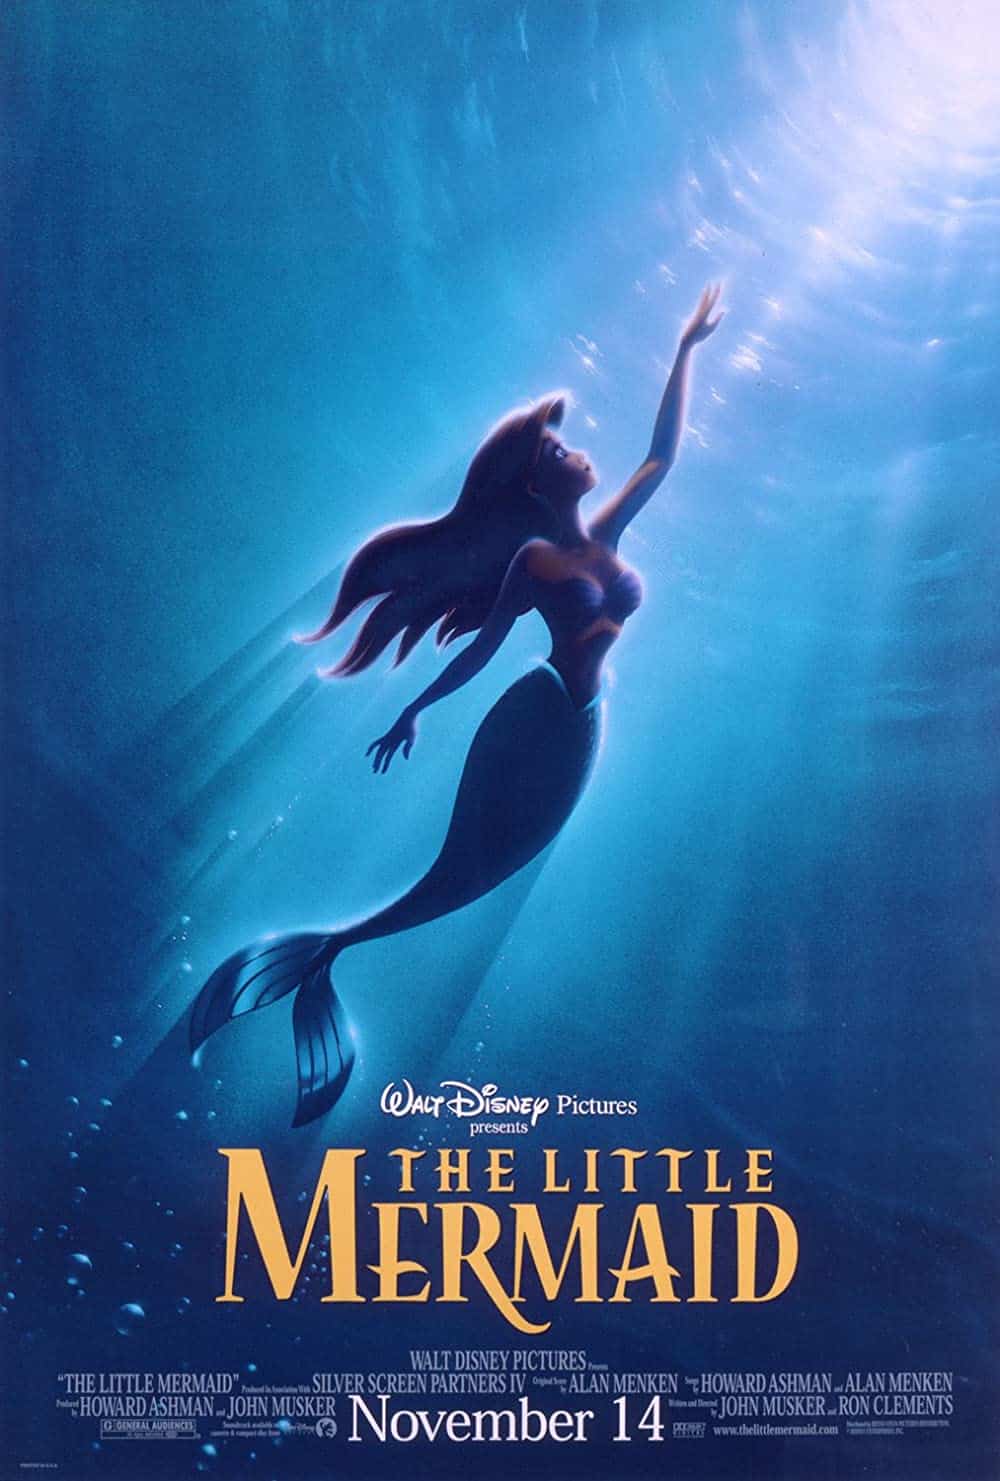 The little mermaid (1989) The little mermaid (1989)